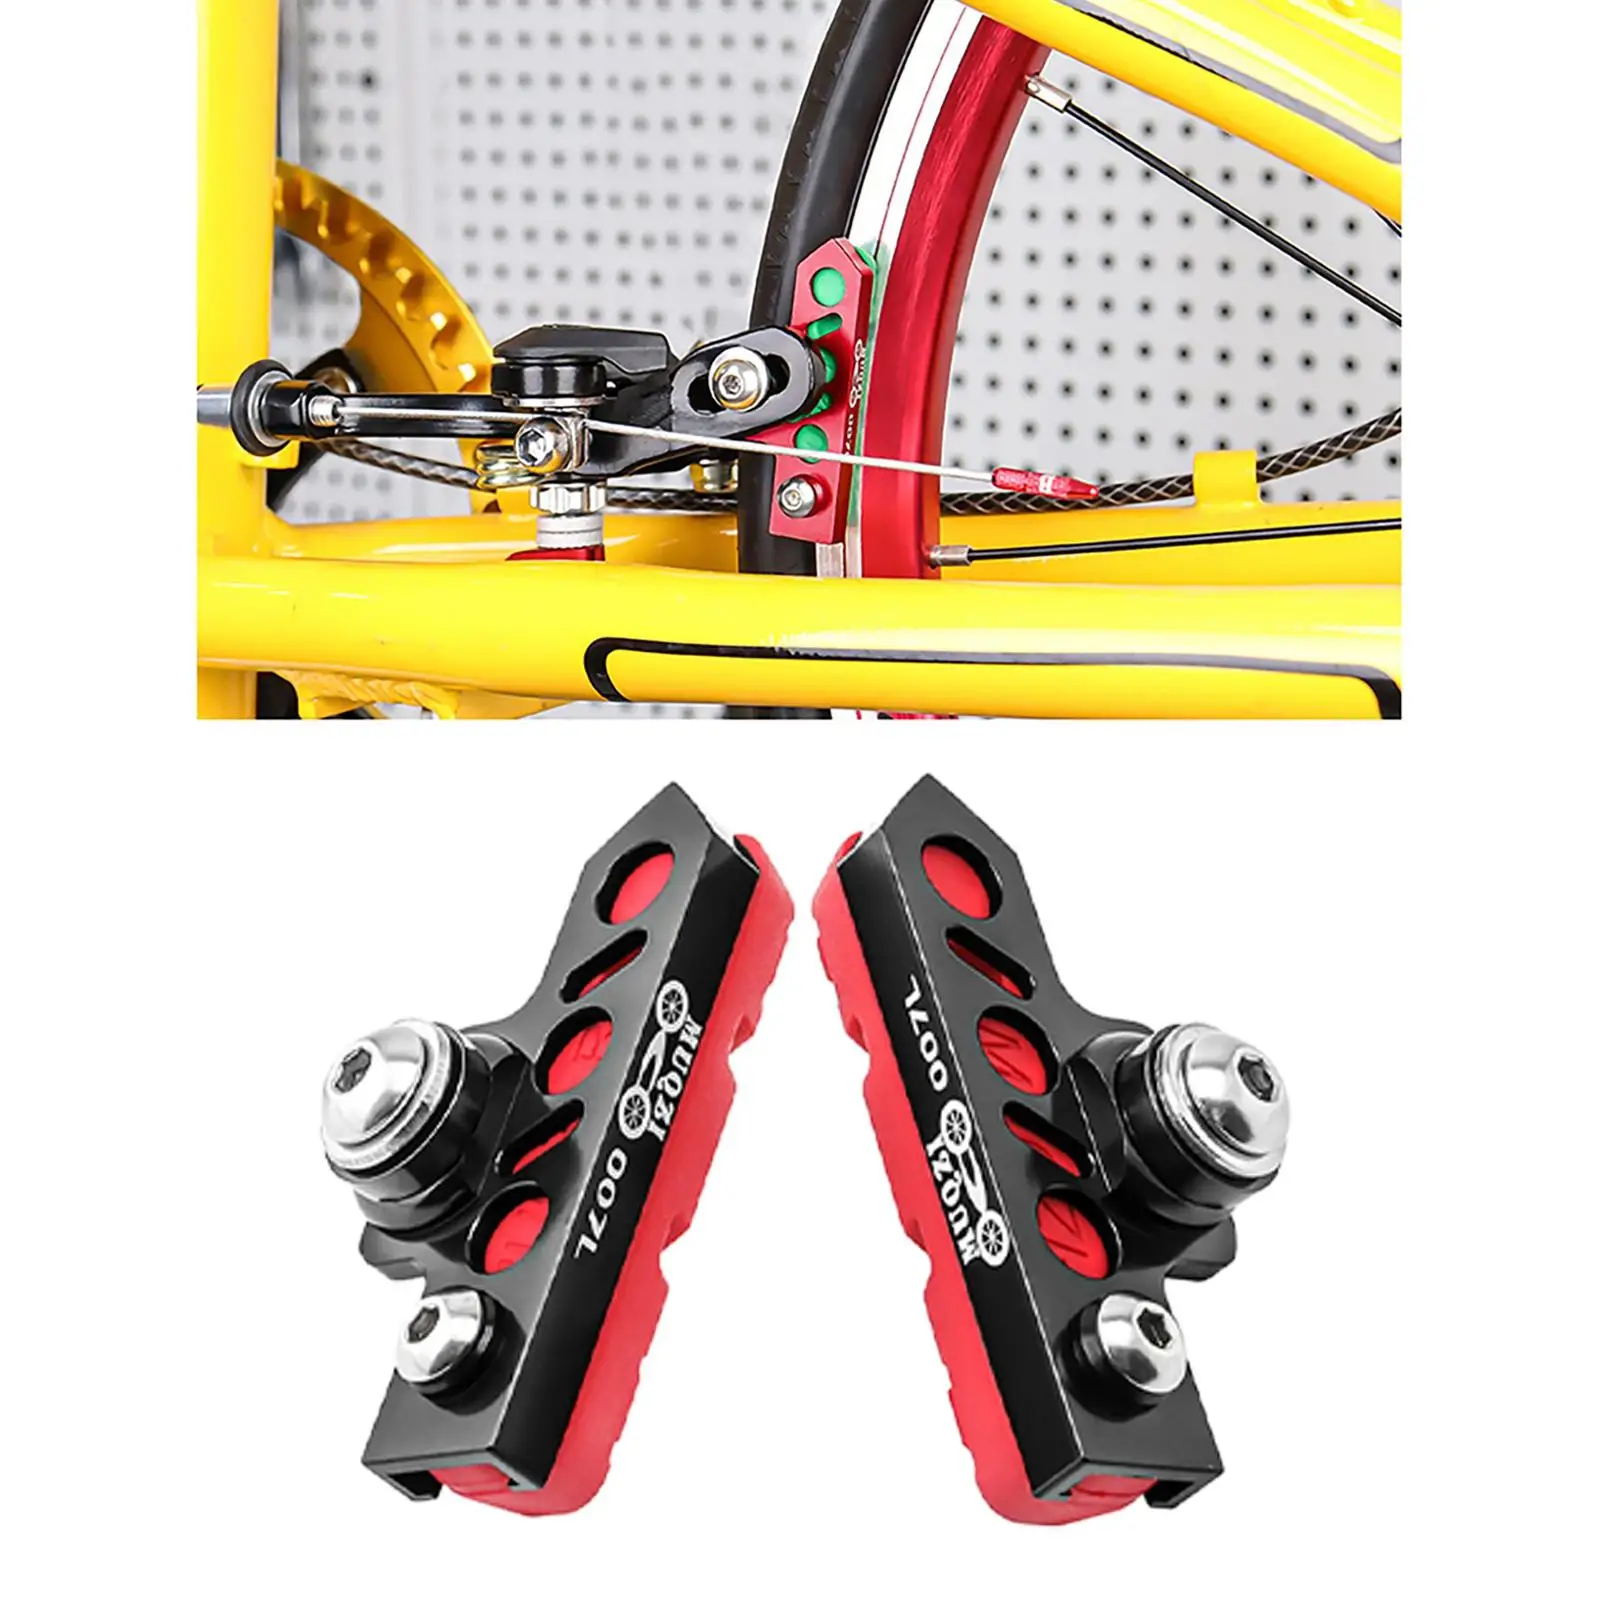 2 Pieces Durable Brake Blocks Shoes Drawer Type Bicycle Brake Pads Anti-Skid MTB BMX Bikes Replacement for Mountain Road Bike